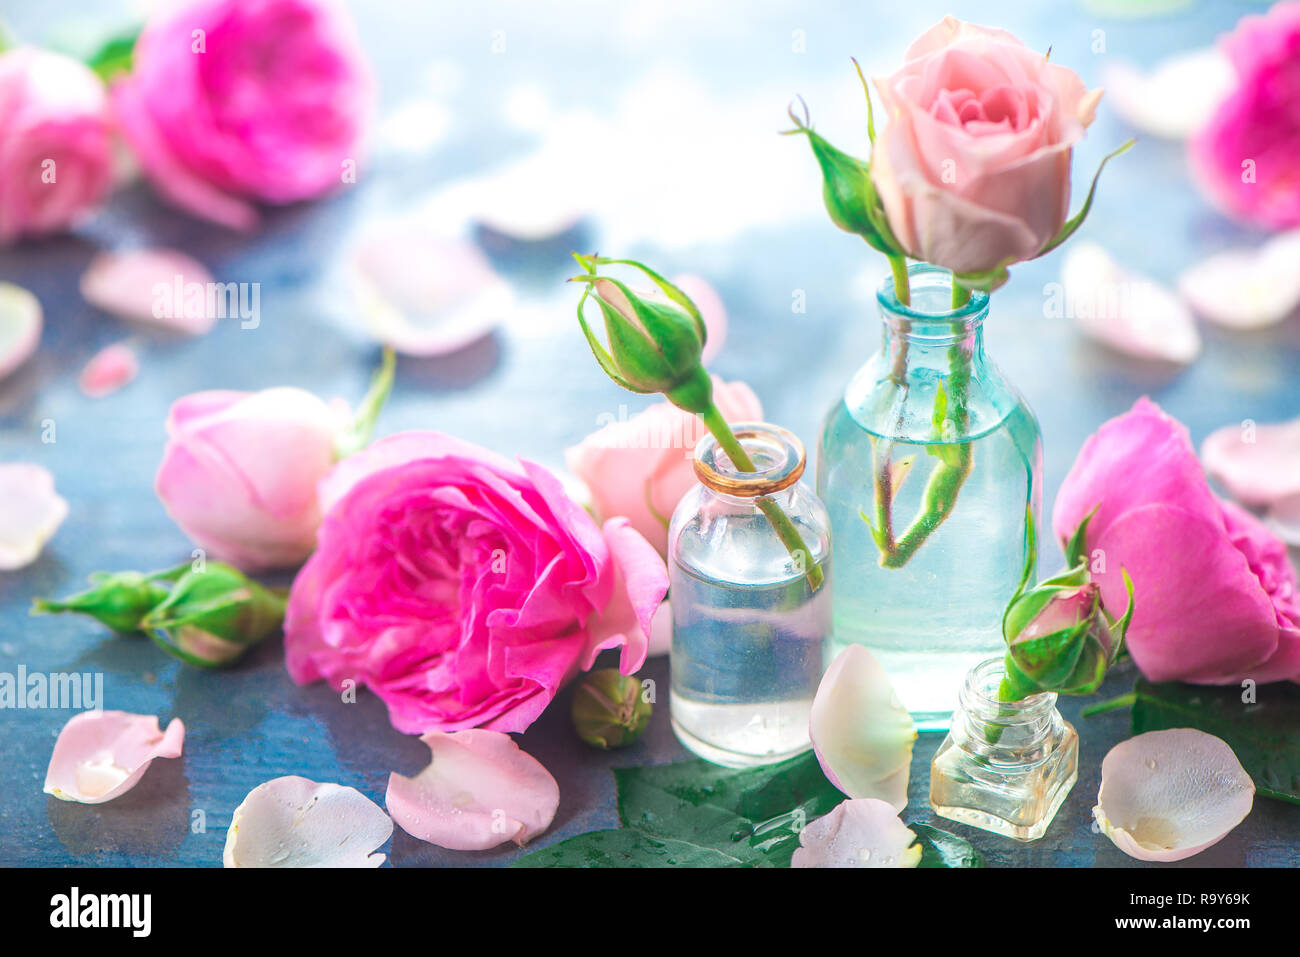 Rosa pfingstrosen Rosen, Blüten und Blätter auf einem nassen regnerischen Hintergrund im Morgenlicht. Feder Header mit Kopie Raum Stockfoto